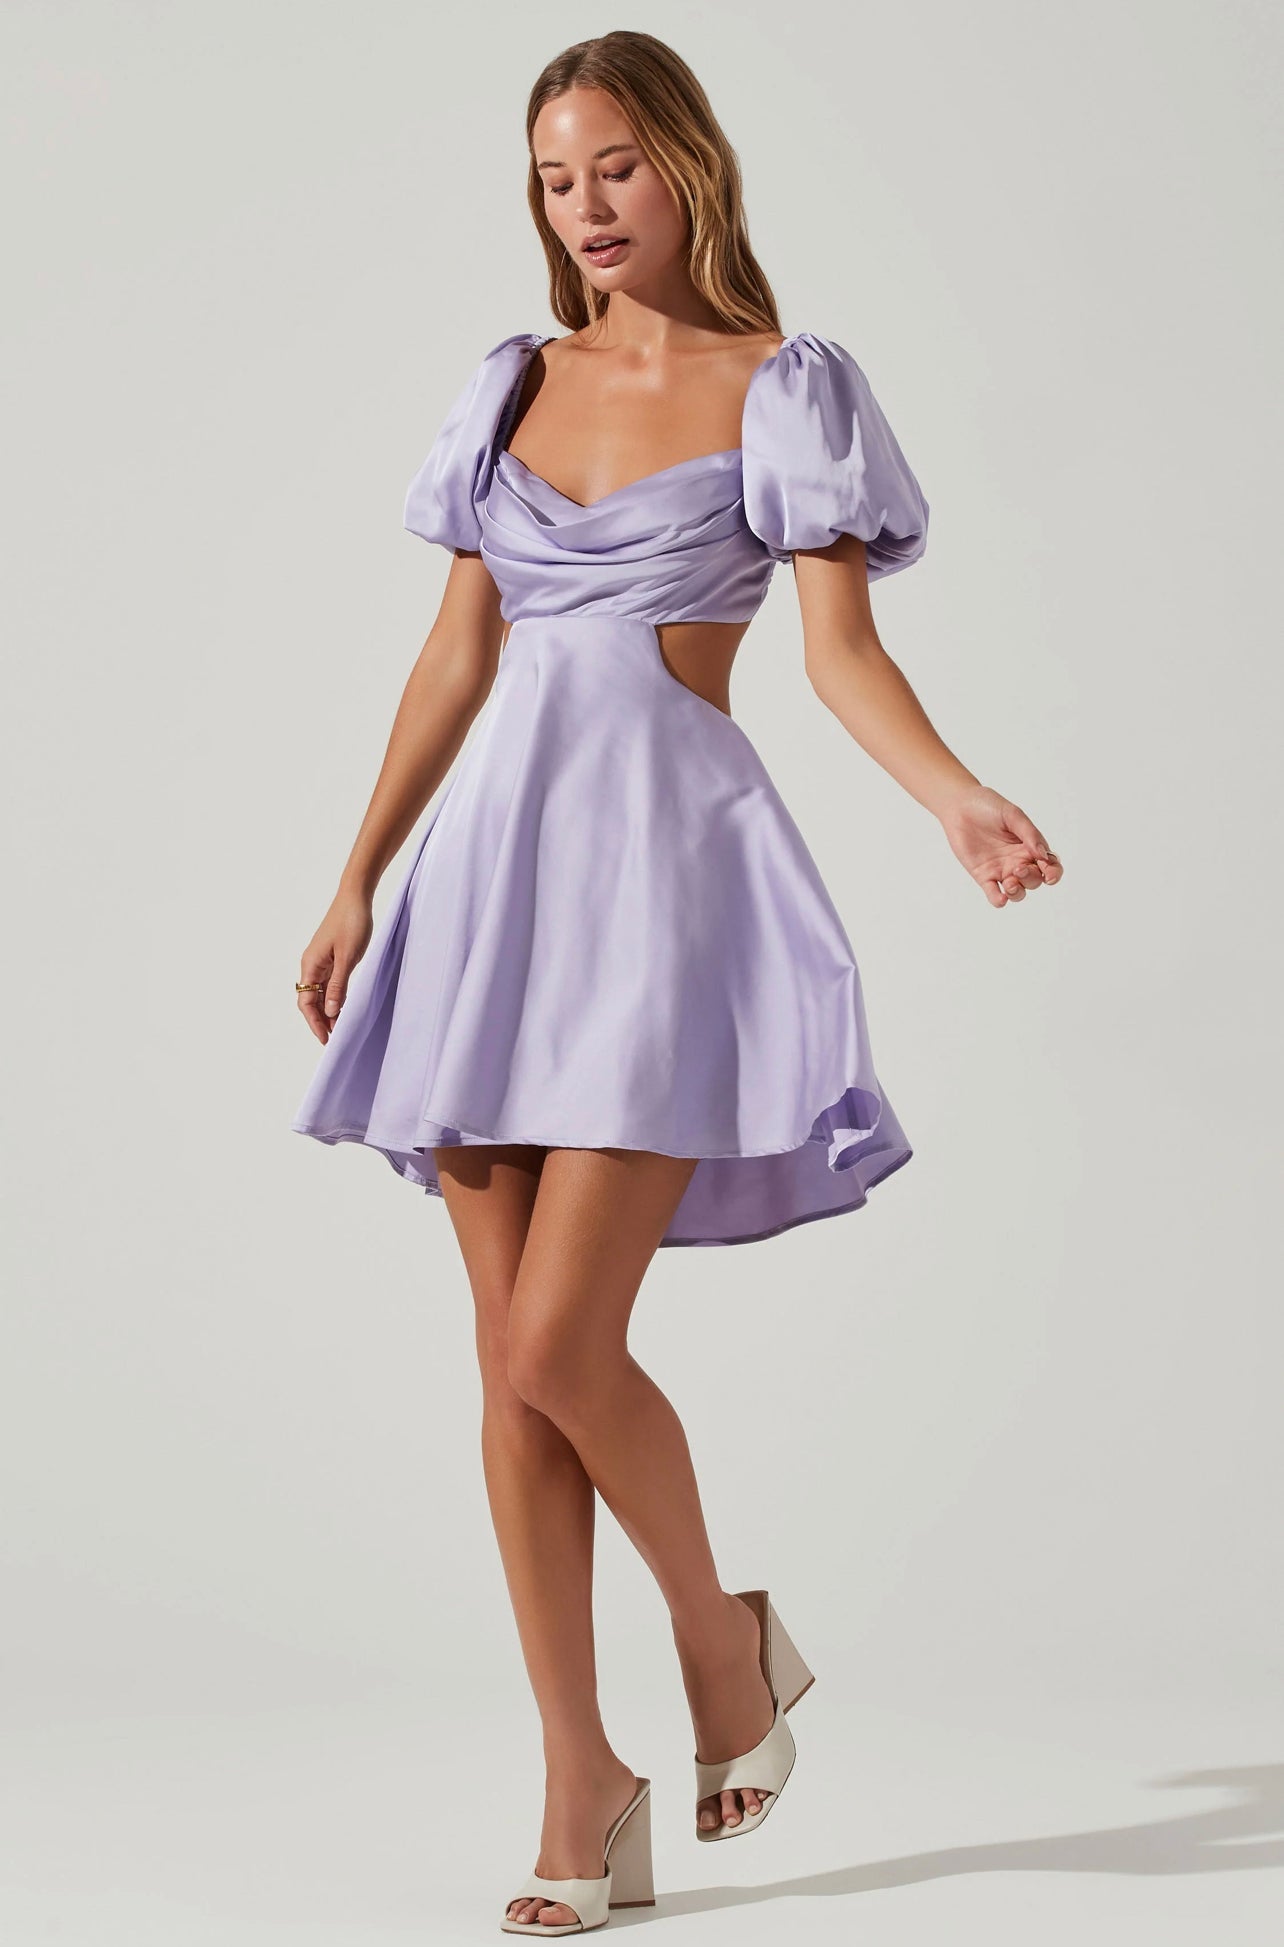 Clarita Dress Lavender - Kjoler